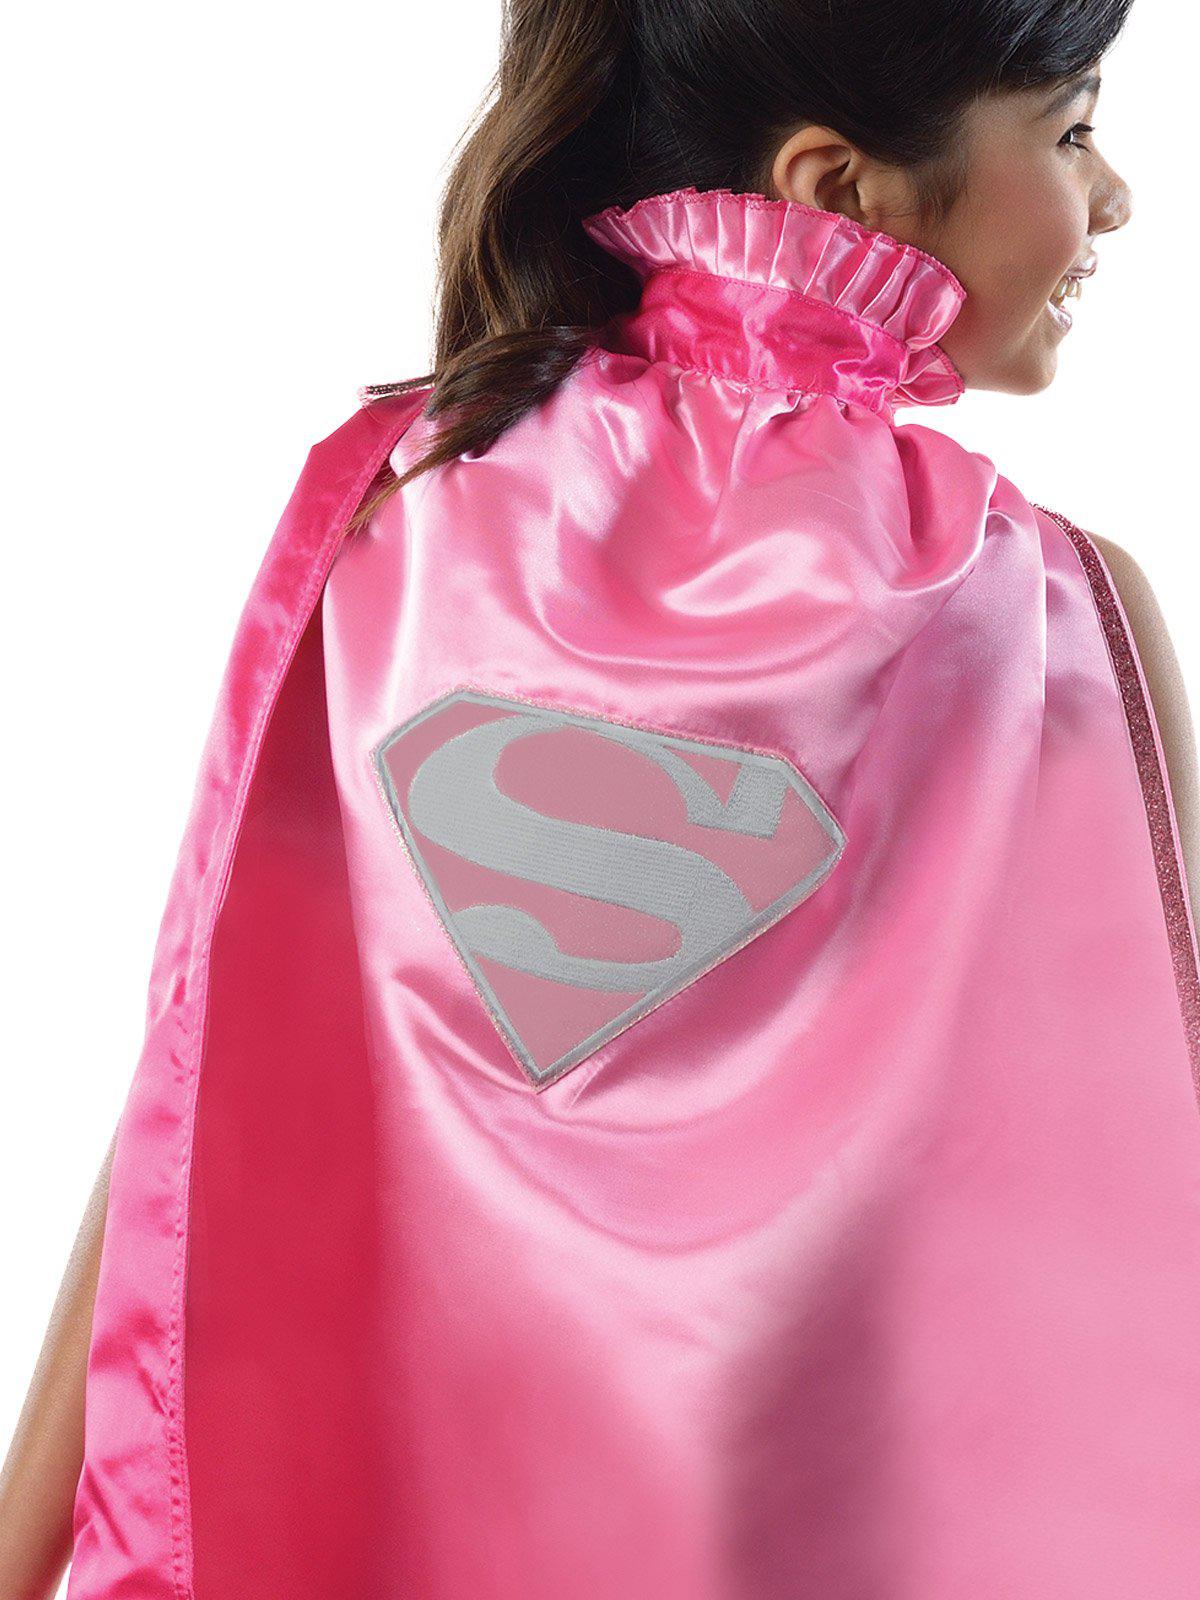 Supergirl Dc Pink Cape Kids - Kids Mega Mart